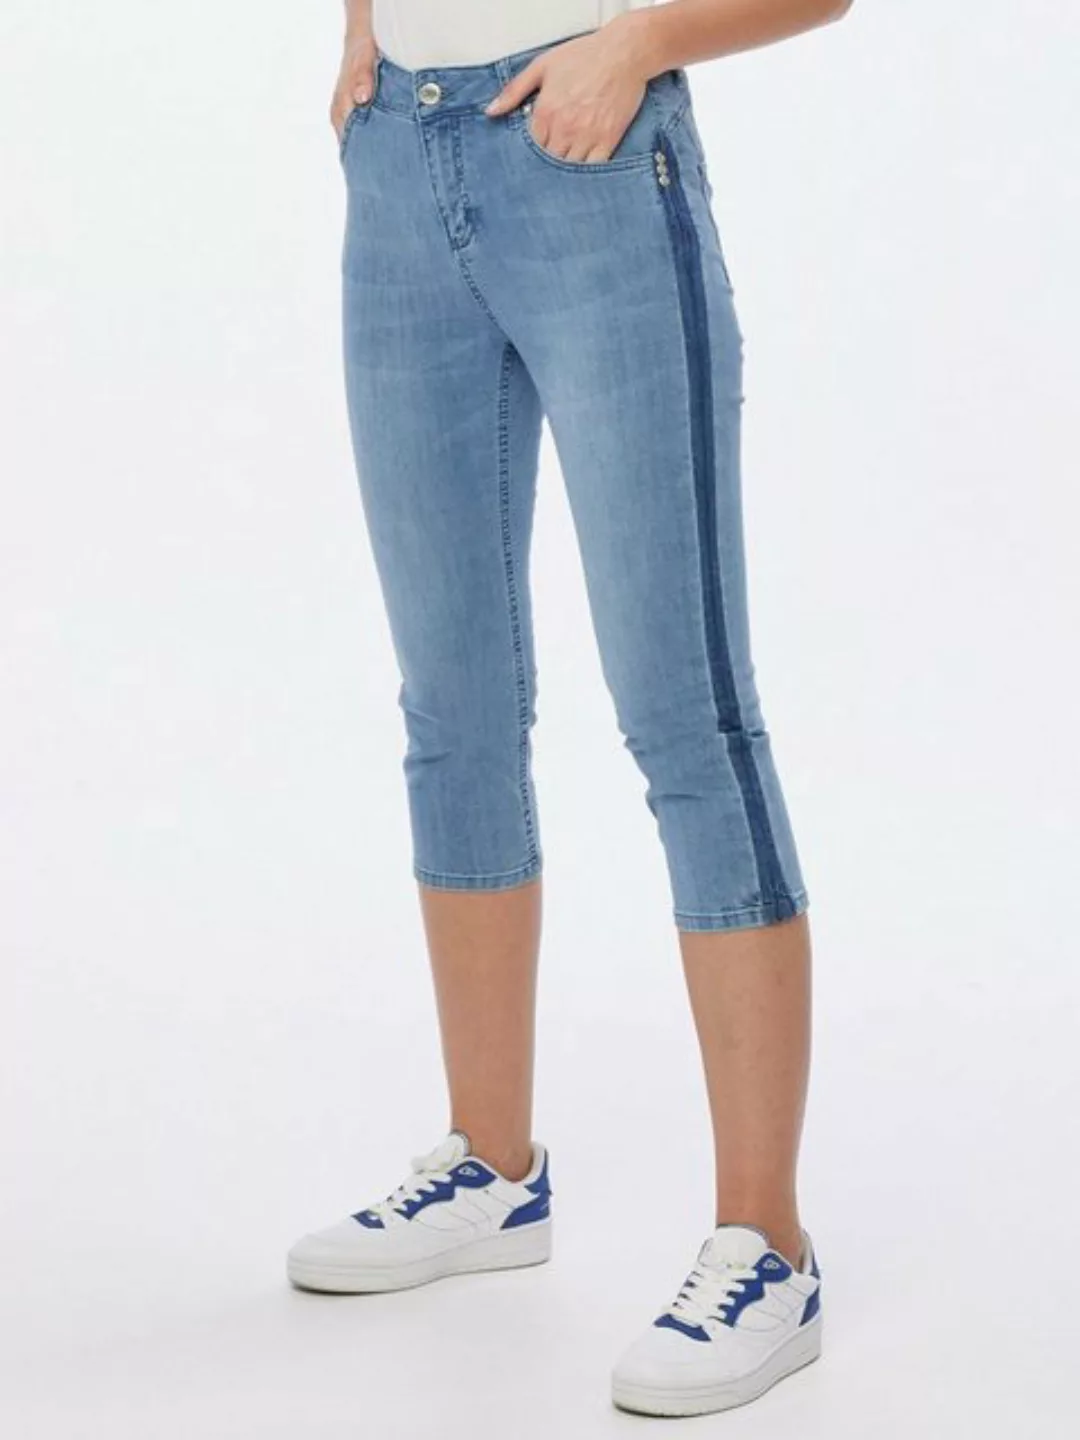 Christian Materne Caprijeans 3/4-Jeans figurbetont im Five-Pocket Design günstig online kaufen